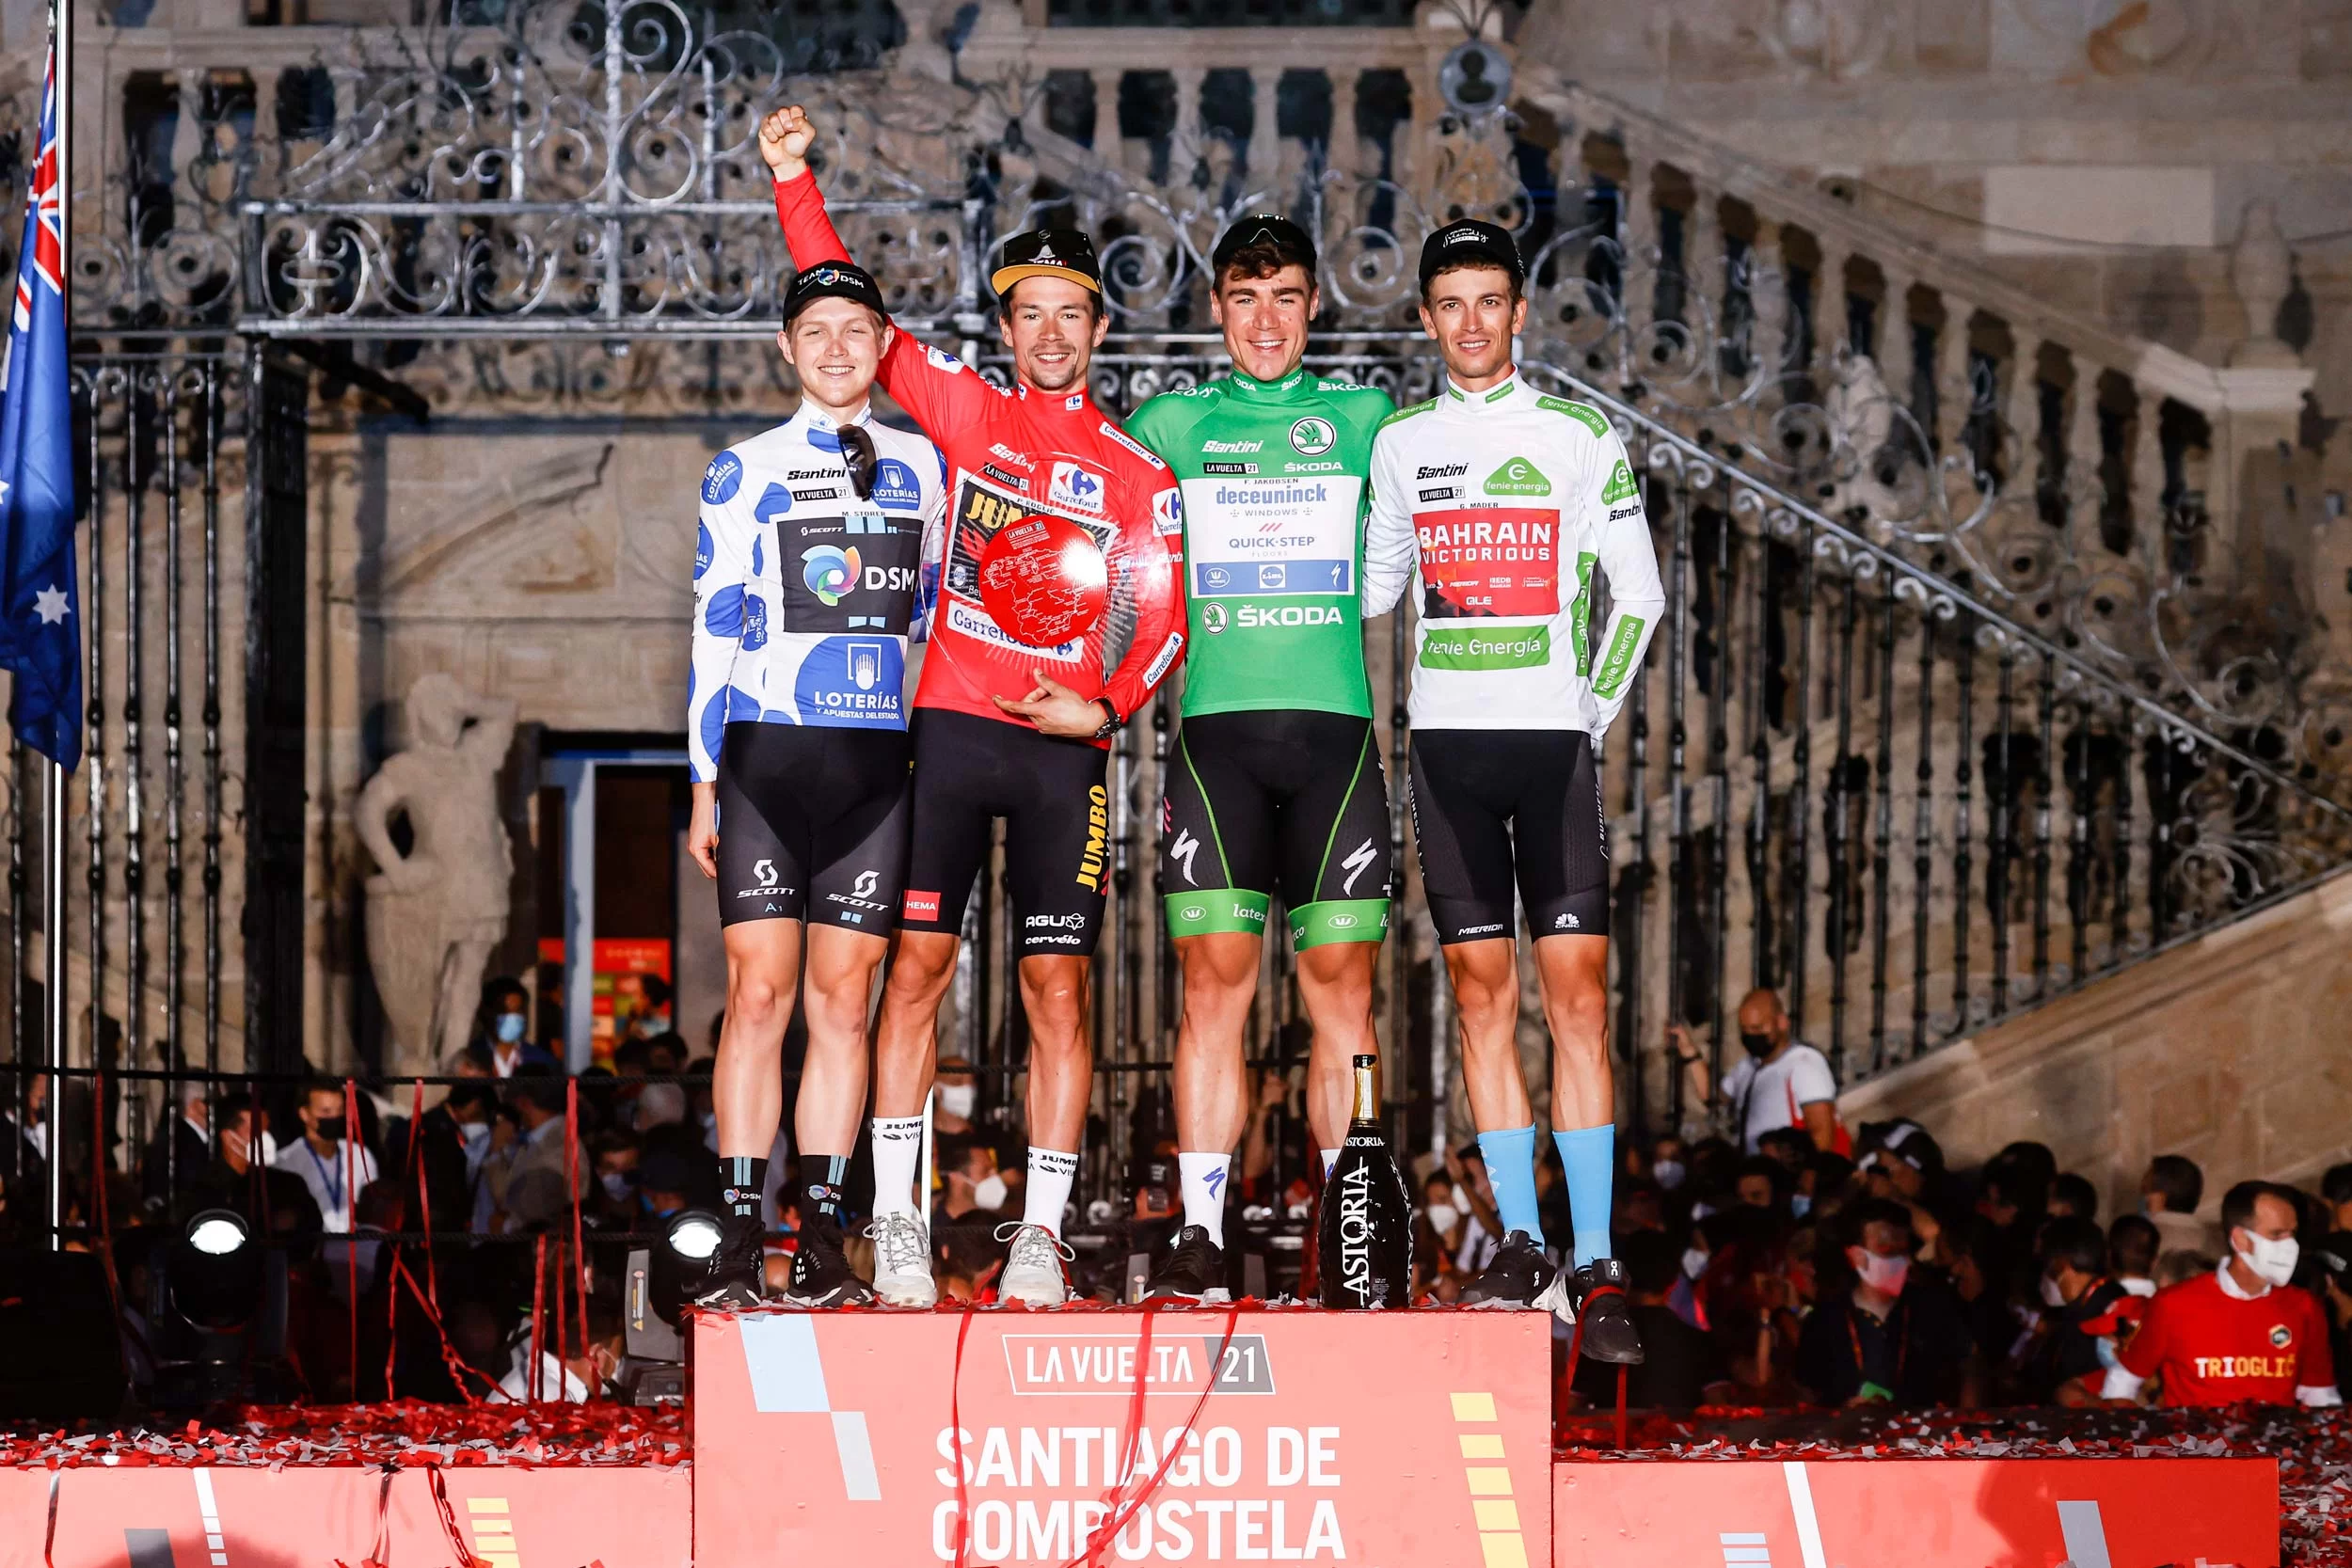 2021 Vuelta Espana Podium Winners